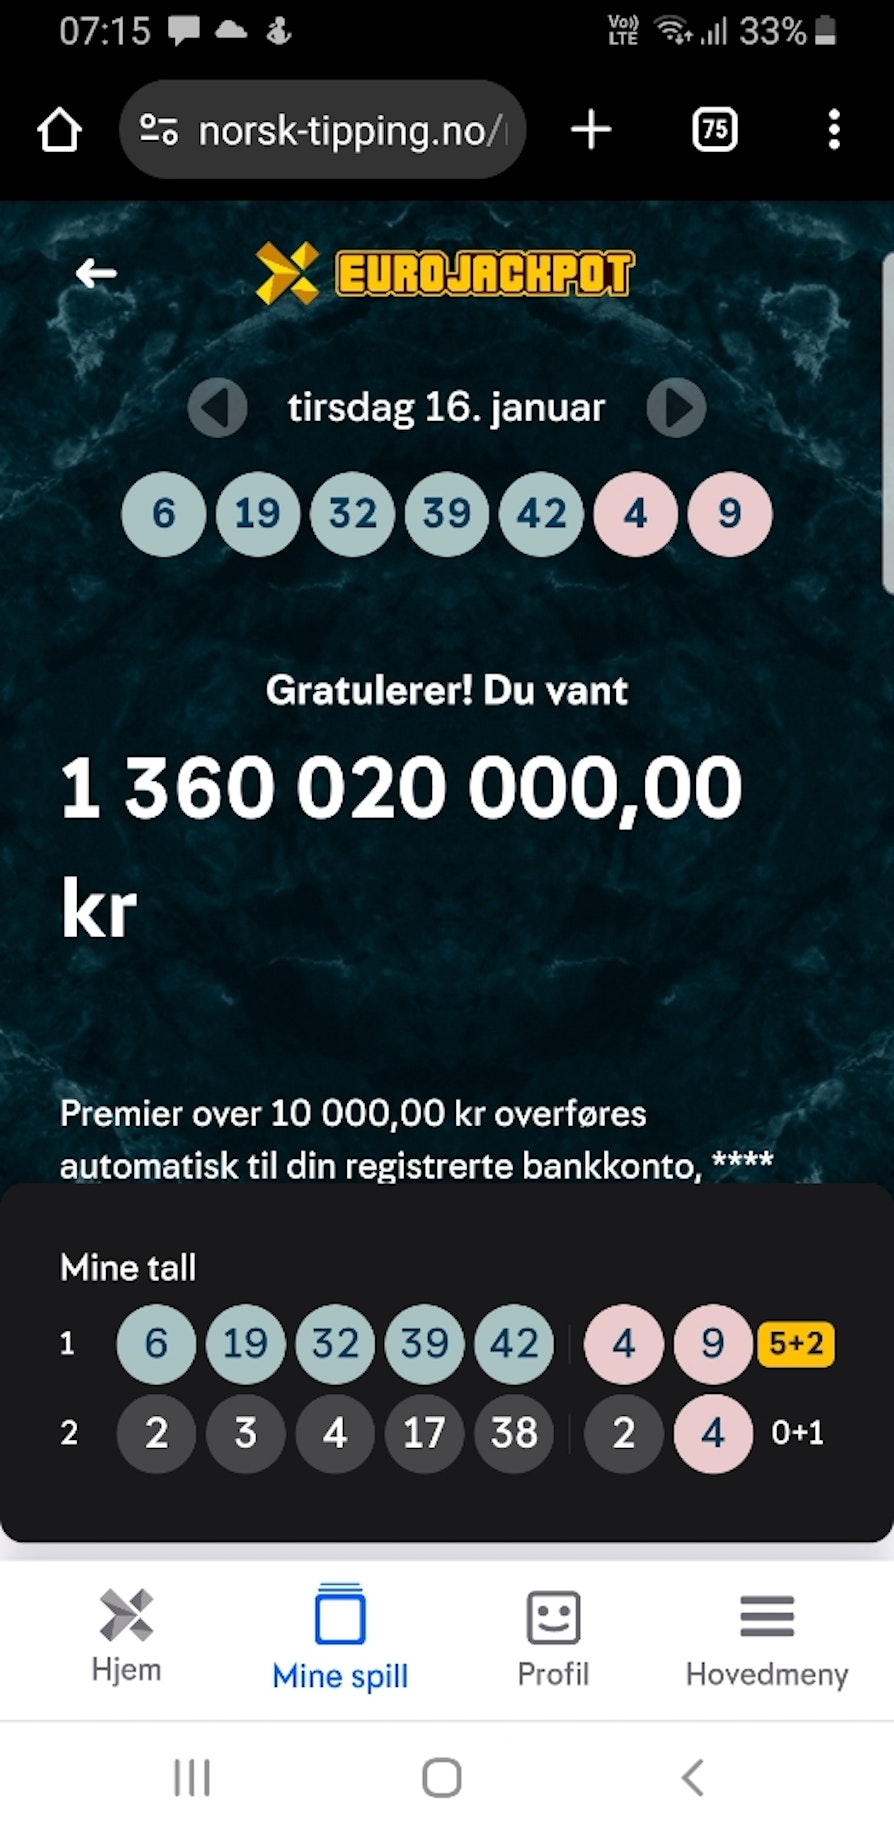 Bilde av spillkvittering, premiebekreftelse hos norsk Eurojackpotvinner som vant 1,3 milliarder kroner 16. januar 2023.